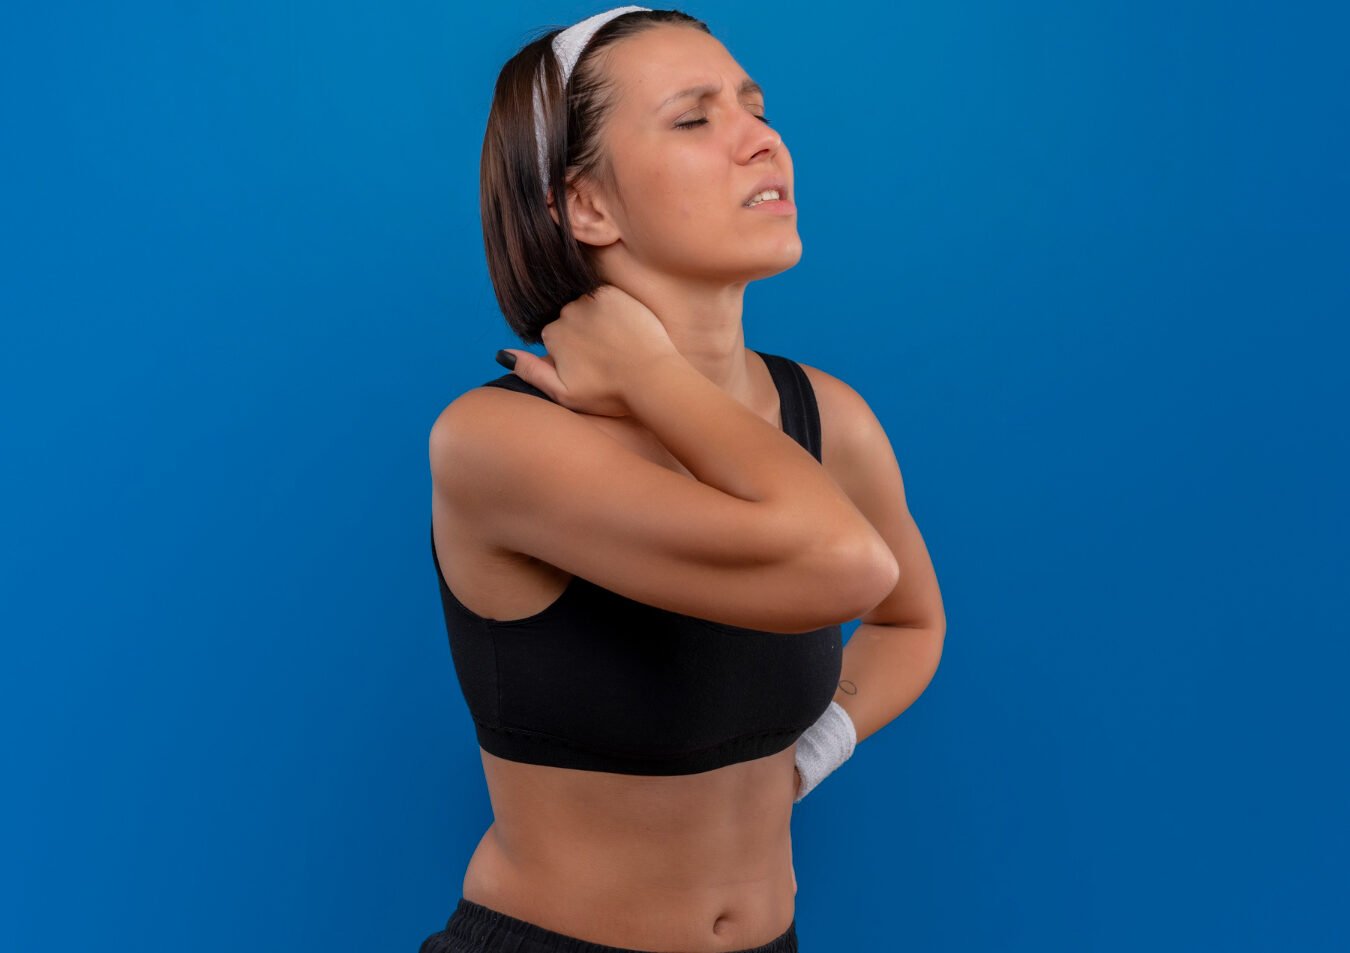 Músculos trabajados en dominadas: ¡Potencia tu espalda y brazos!